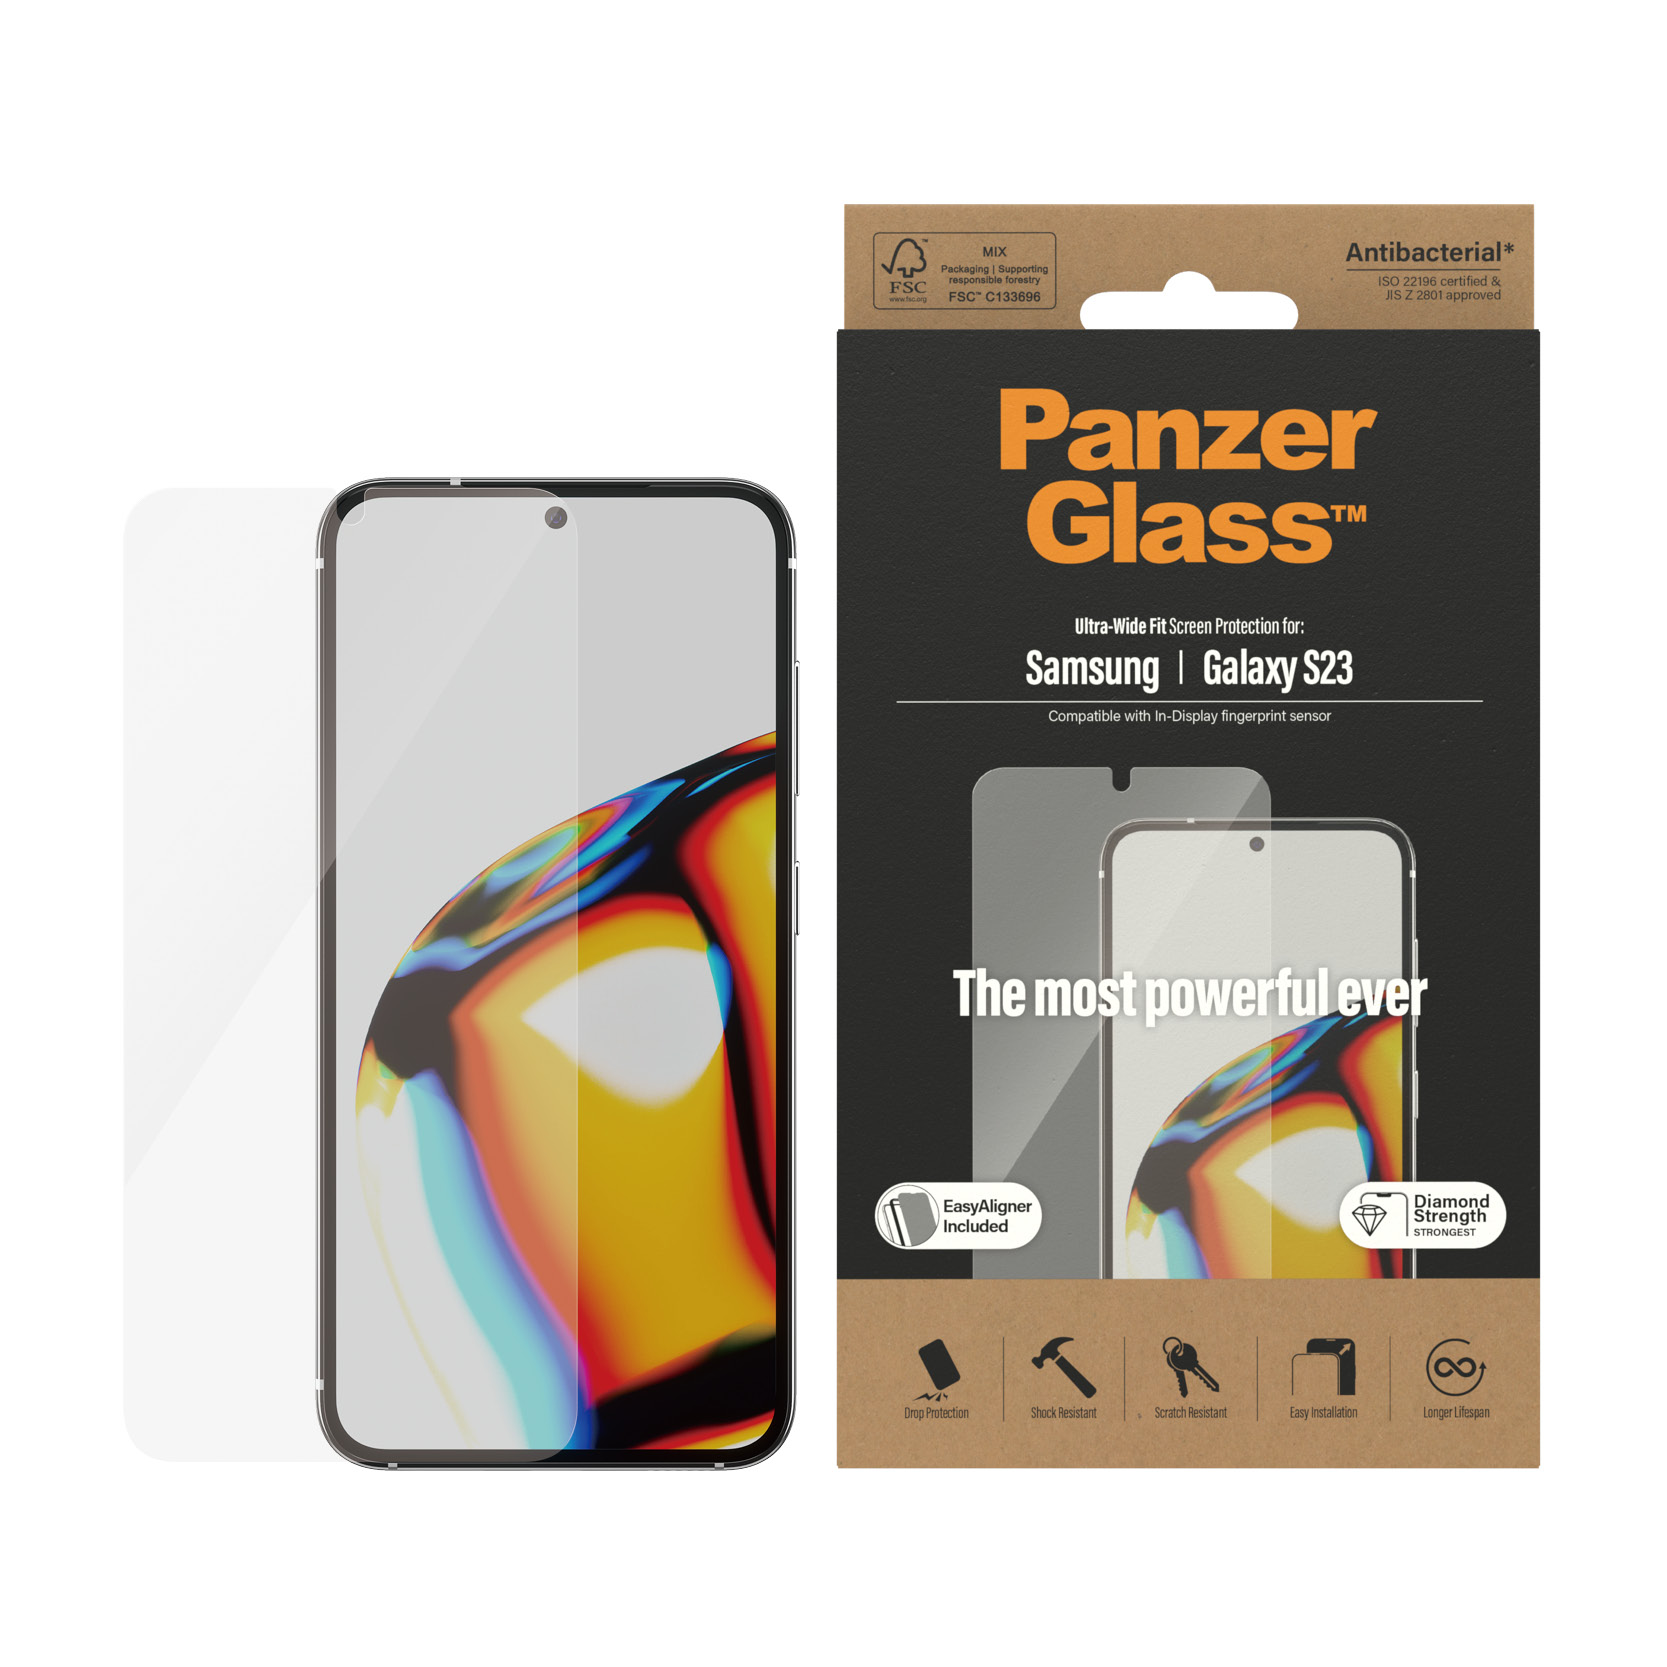 PanzerGlass szko hartowane Ultra-Wide Fit Samsung Galaxy S23 / 2